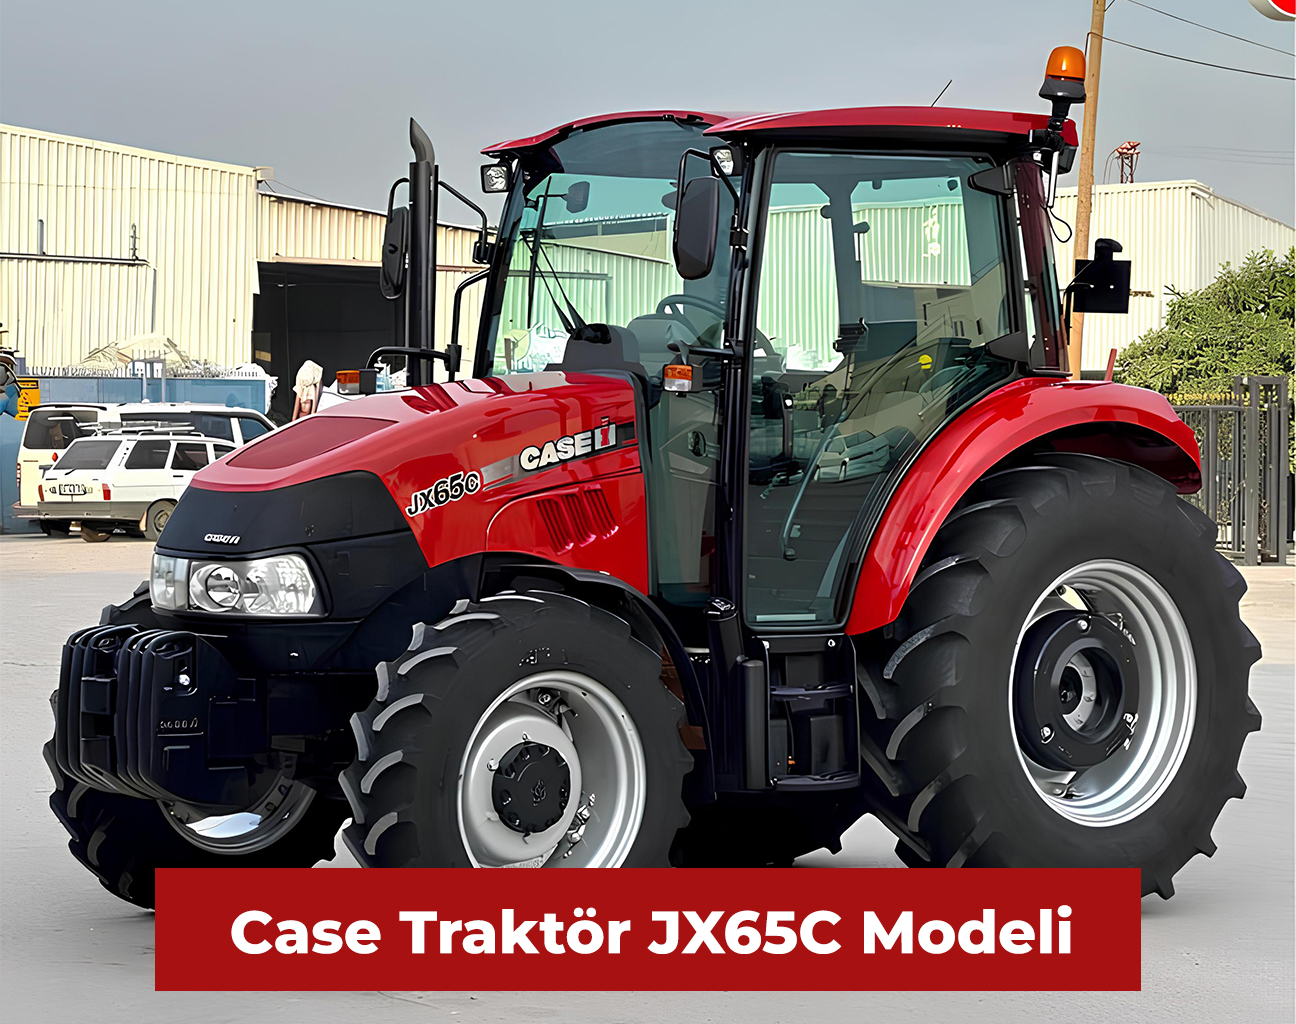 Case Traktor Fiyatlari